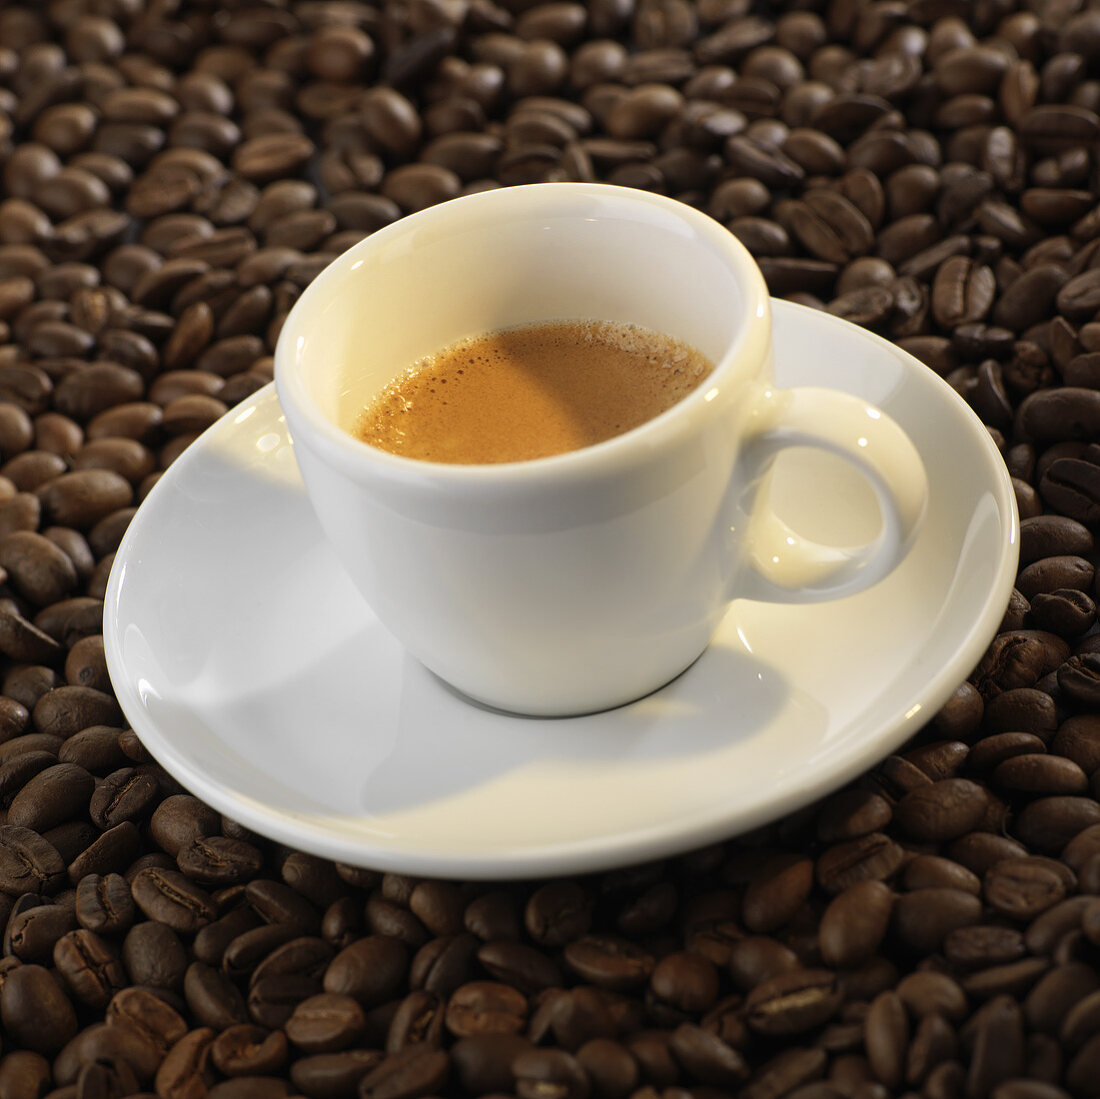 Eine Tasse Espresso auf Kaffeebohnen